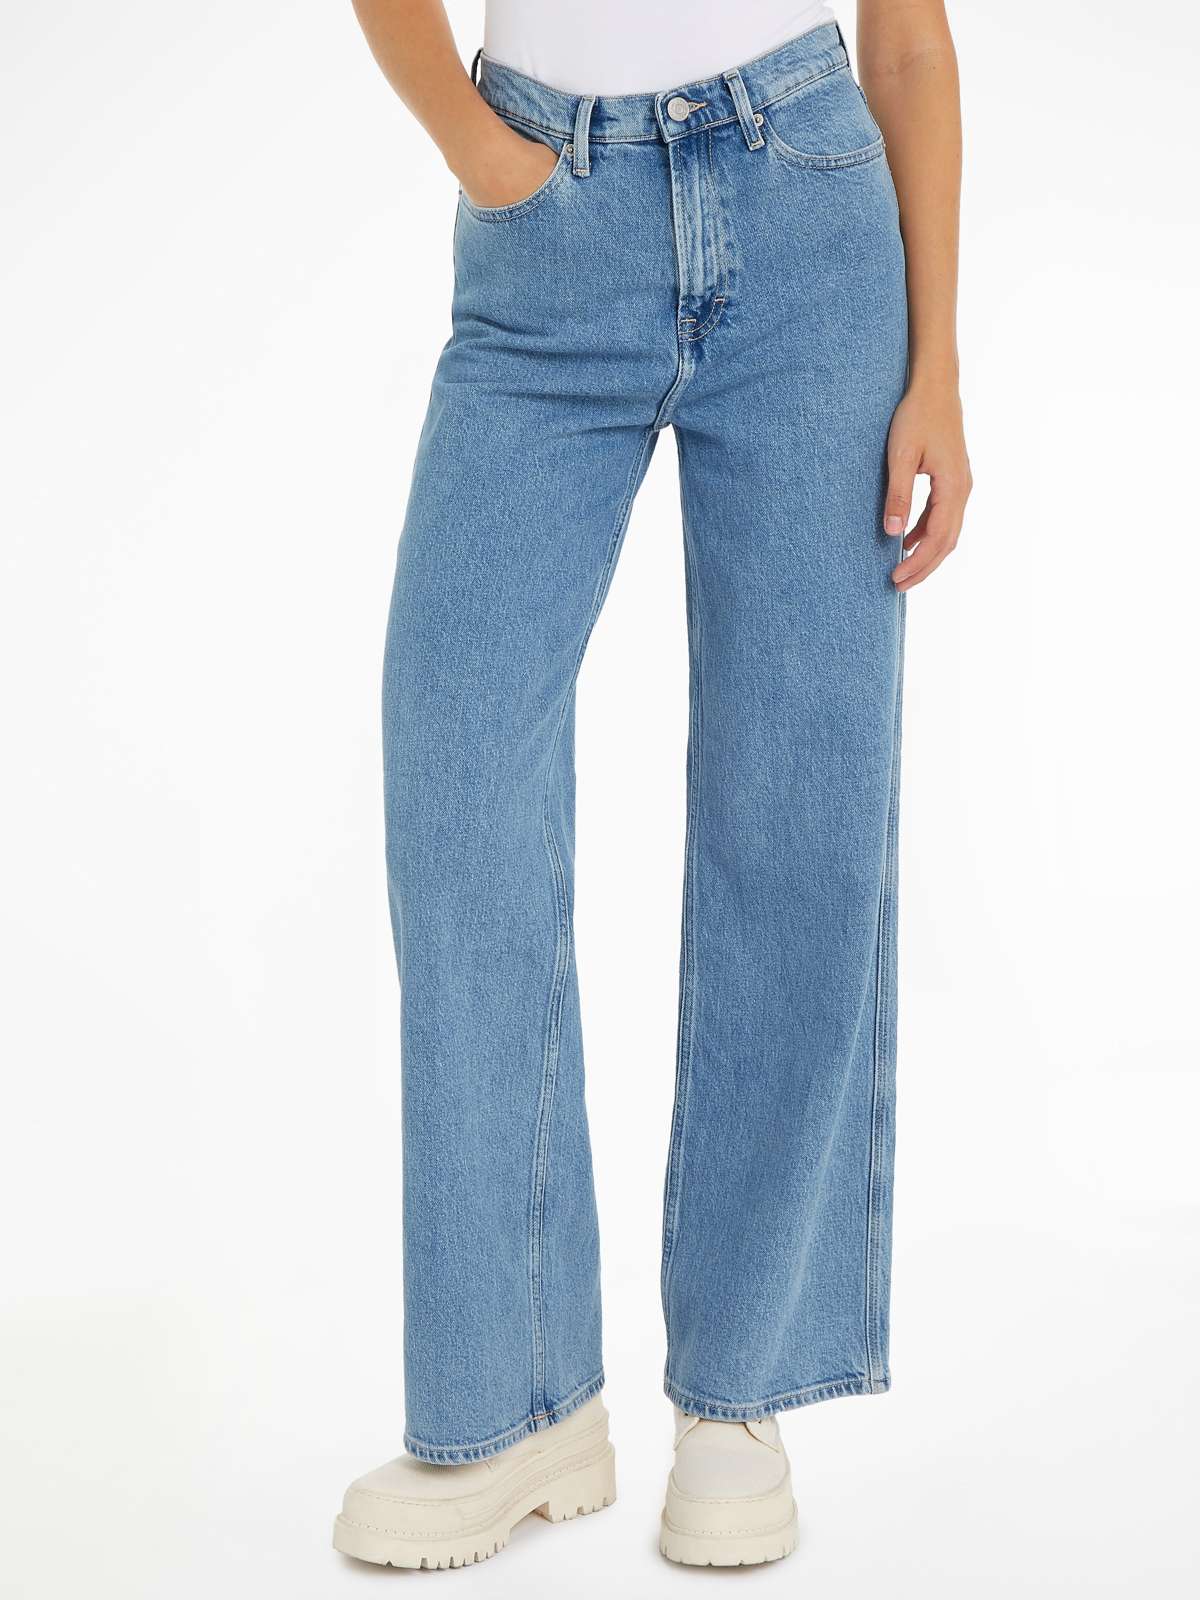 Широкие джинсы с фирменной этикеткой и значком.